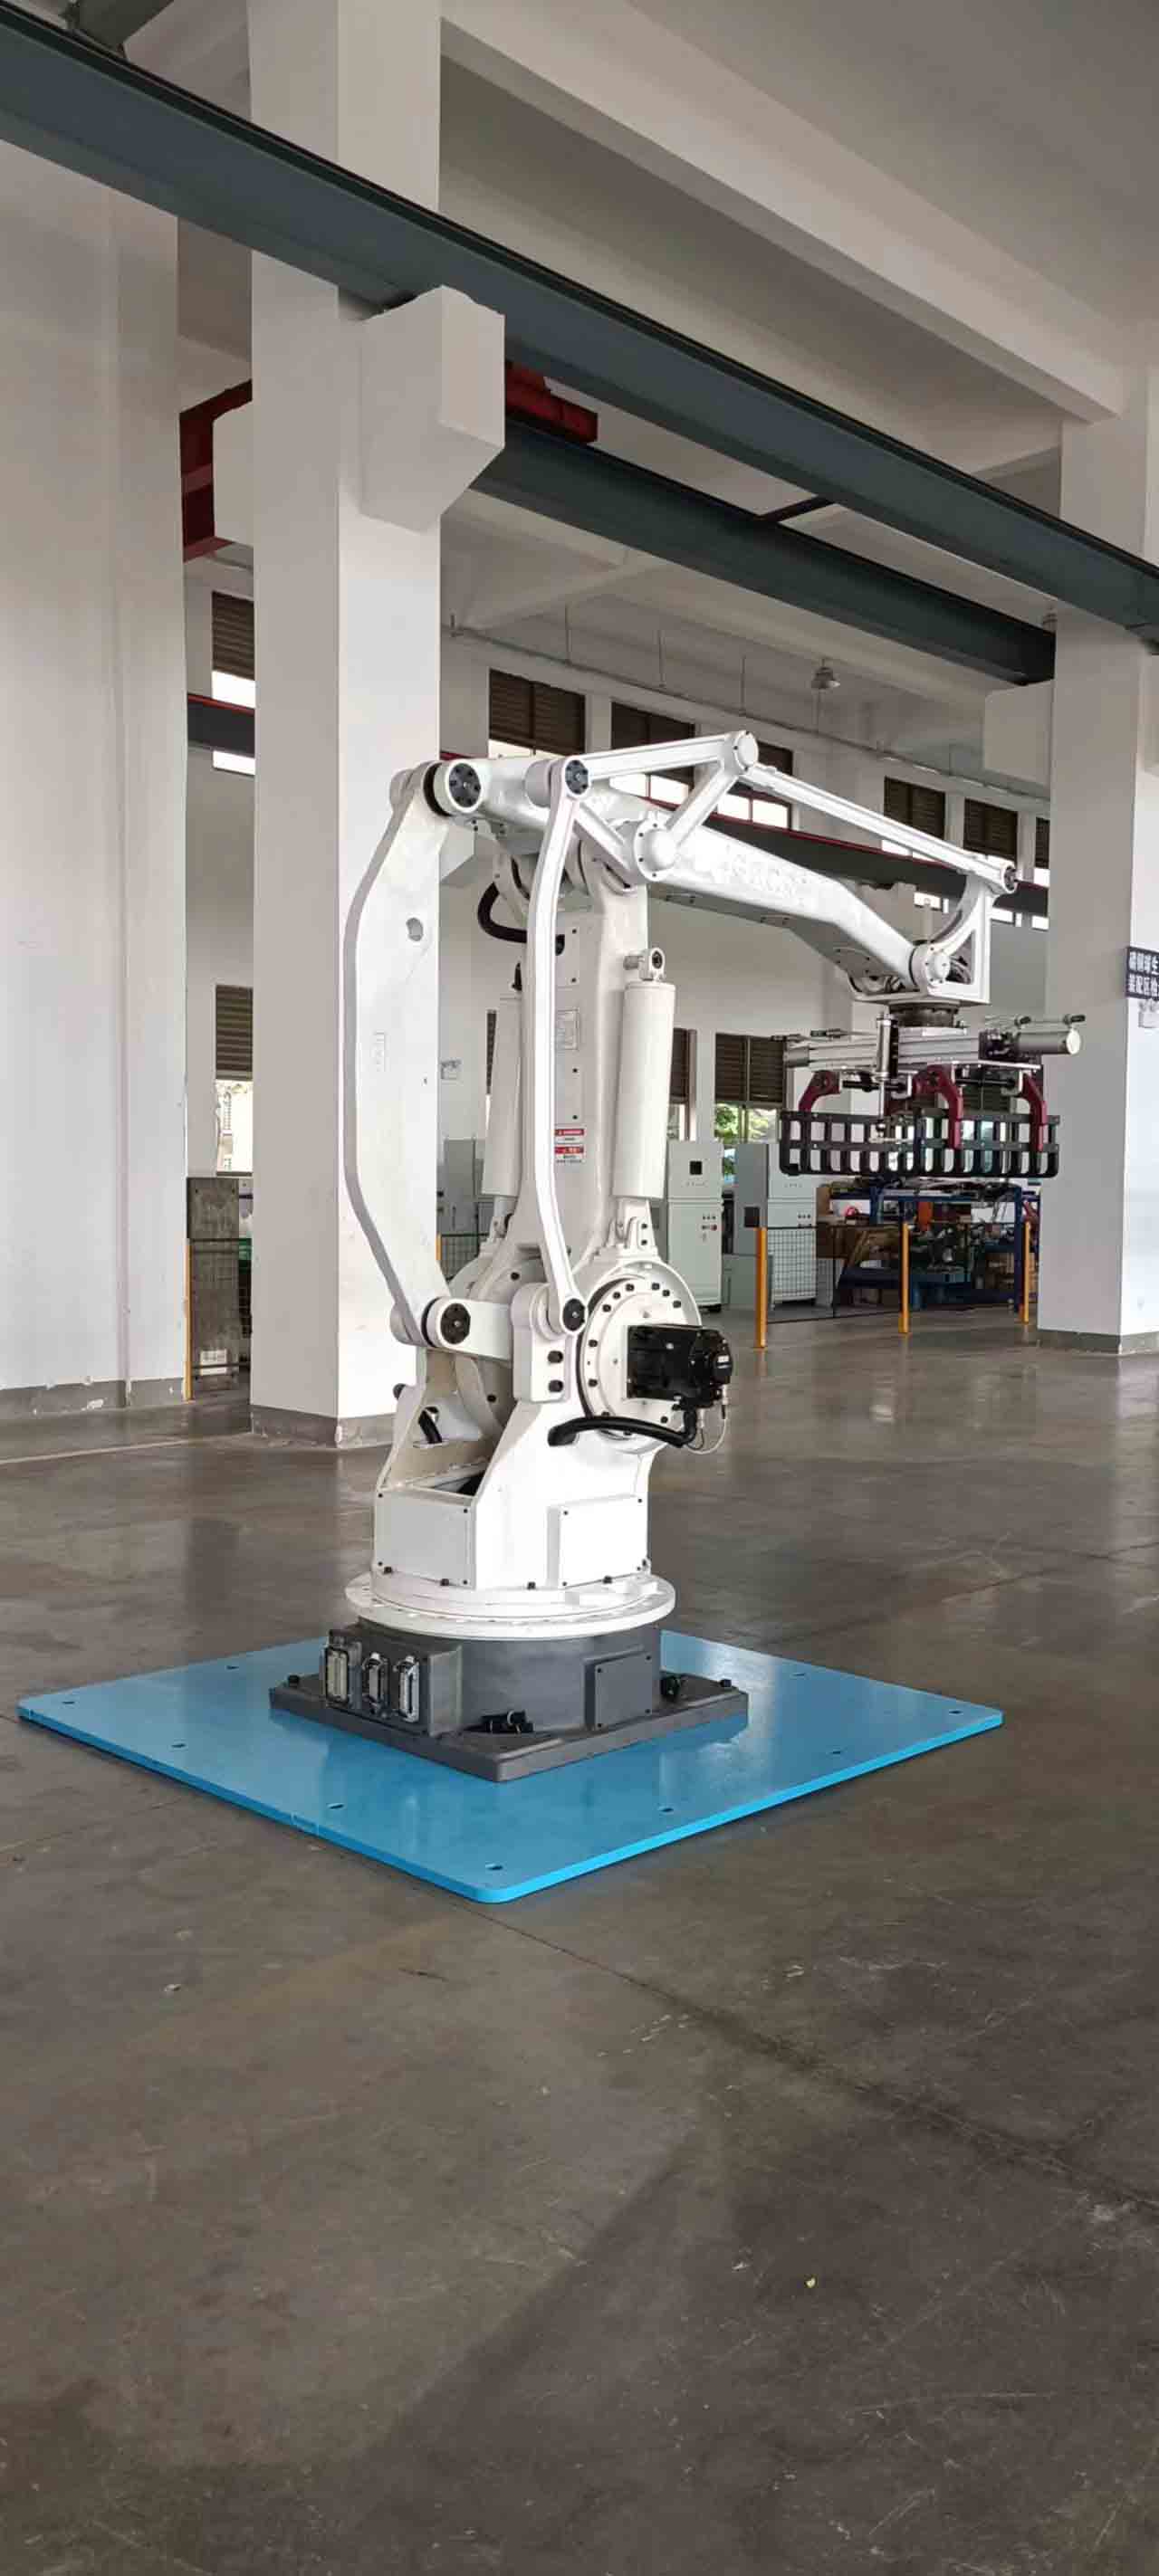 Робот-палетоукладчик грузоподъемностью 200 кг